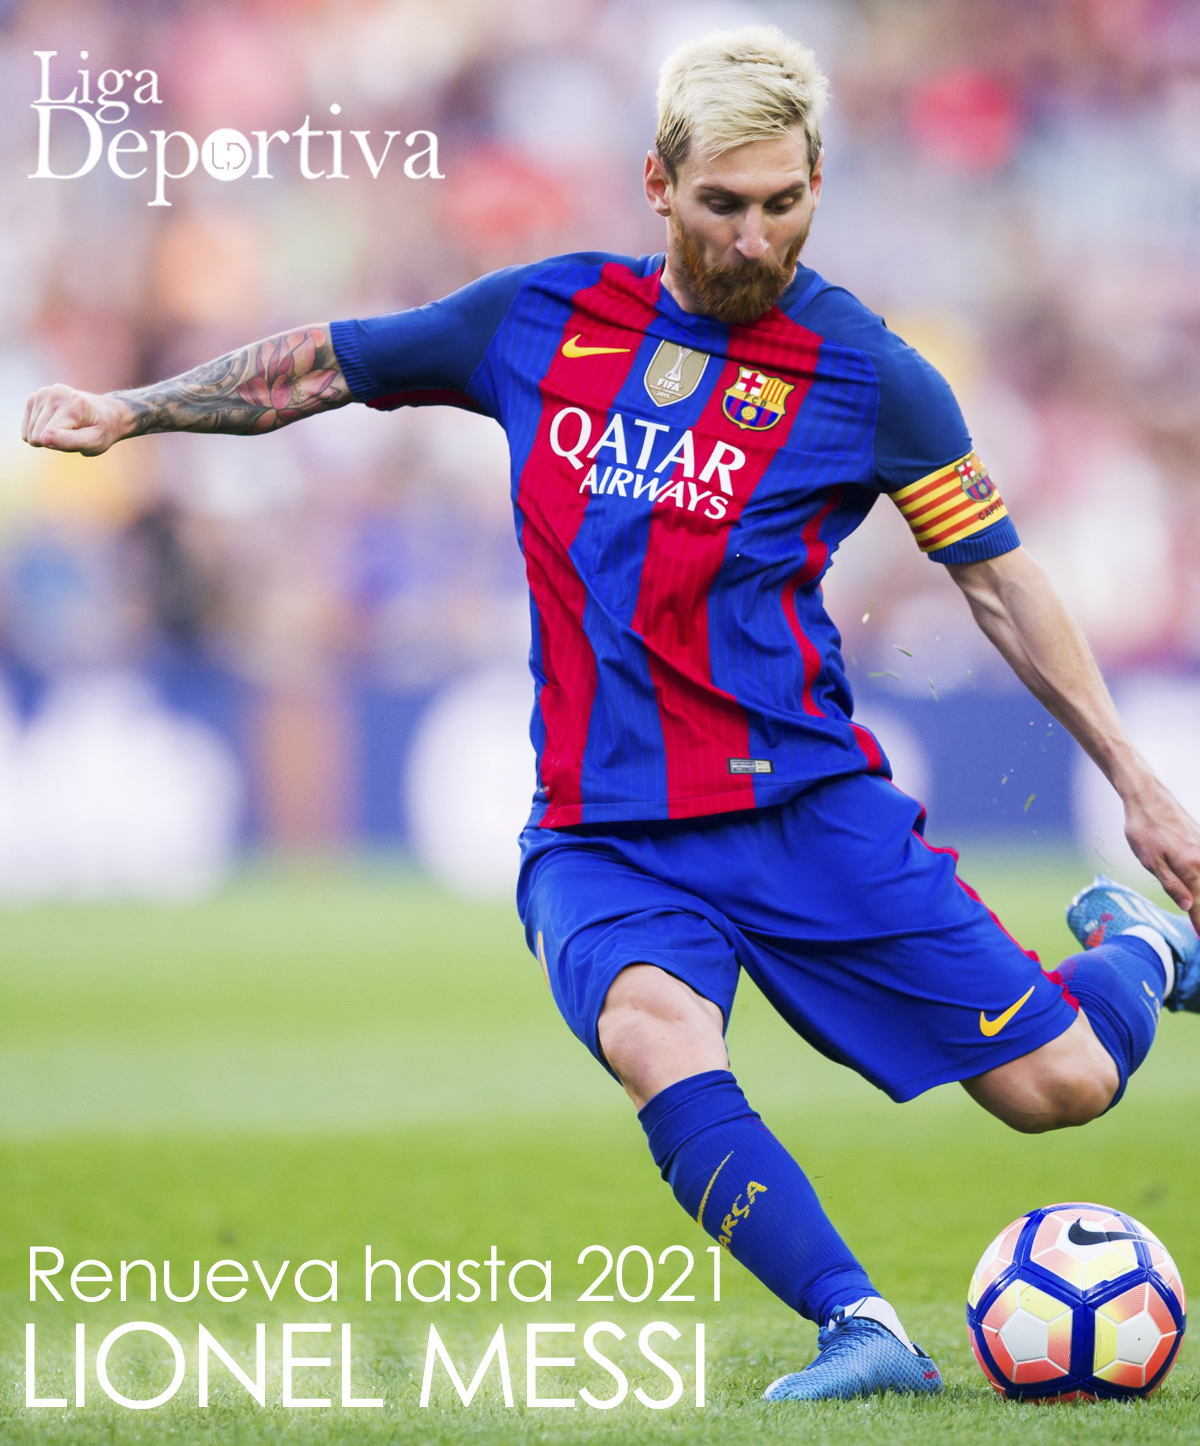 Lionel Messi renueva contrato hasta 2021 con el FC Barcelona 